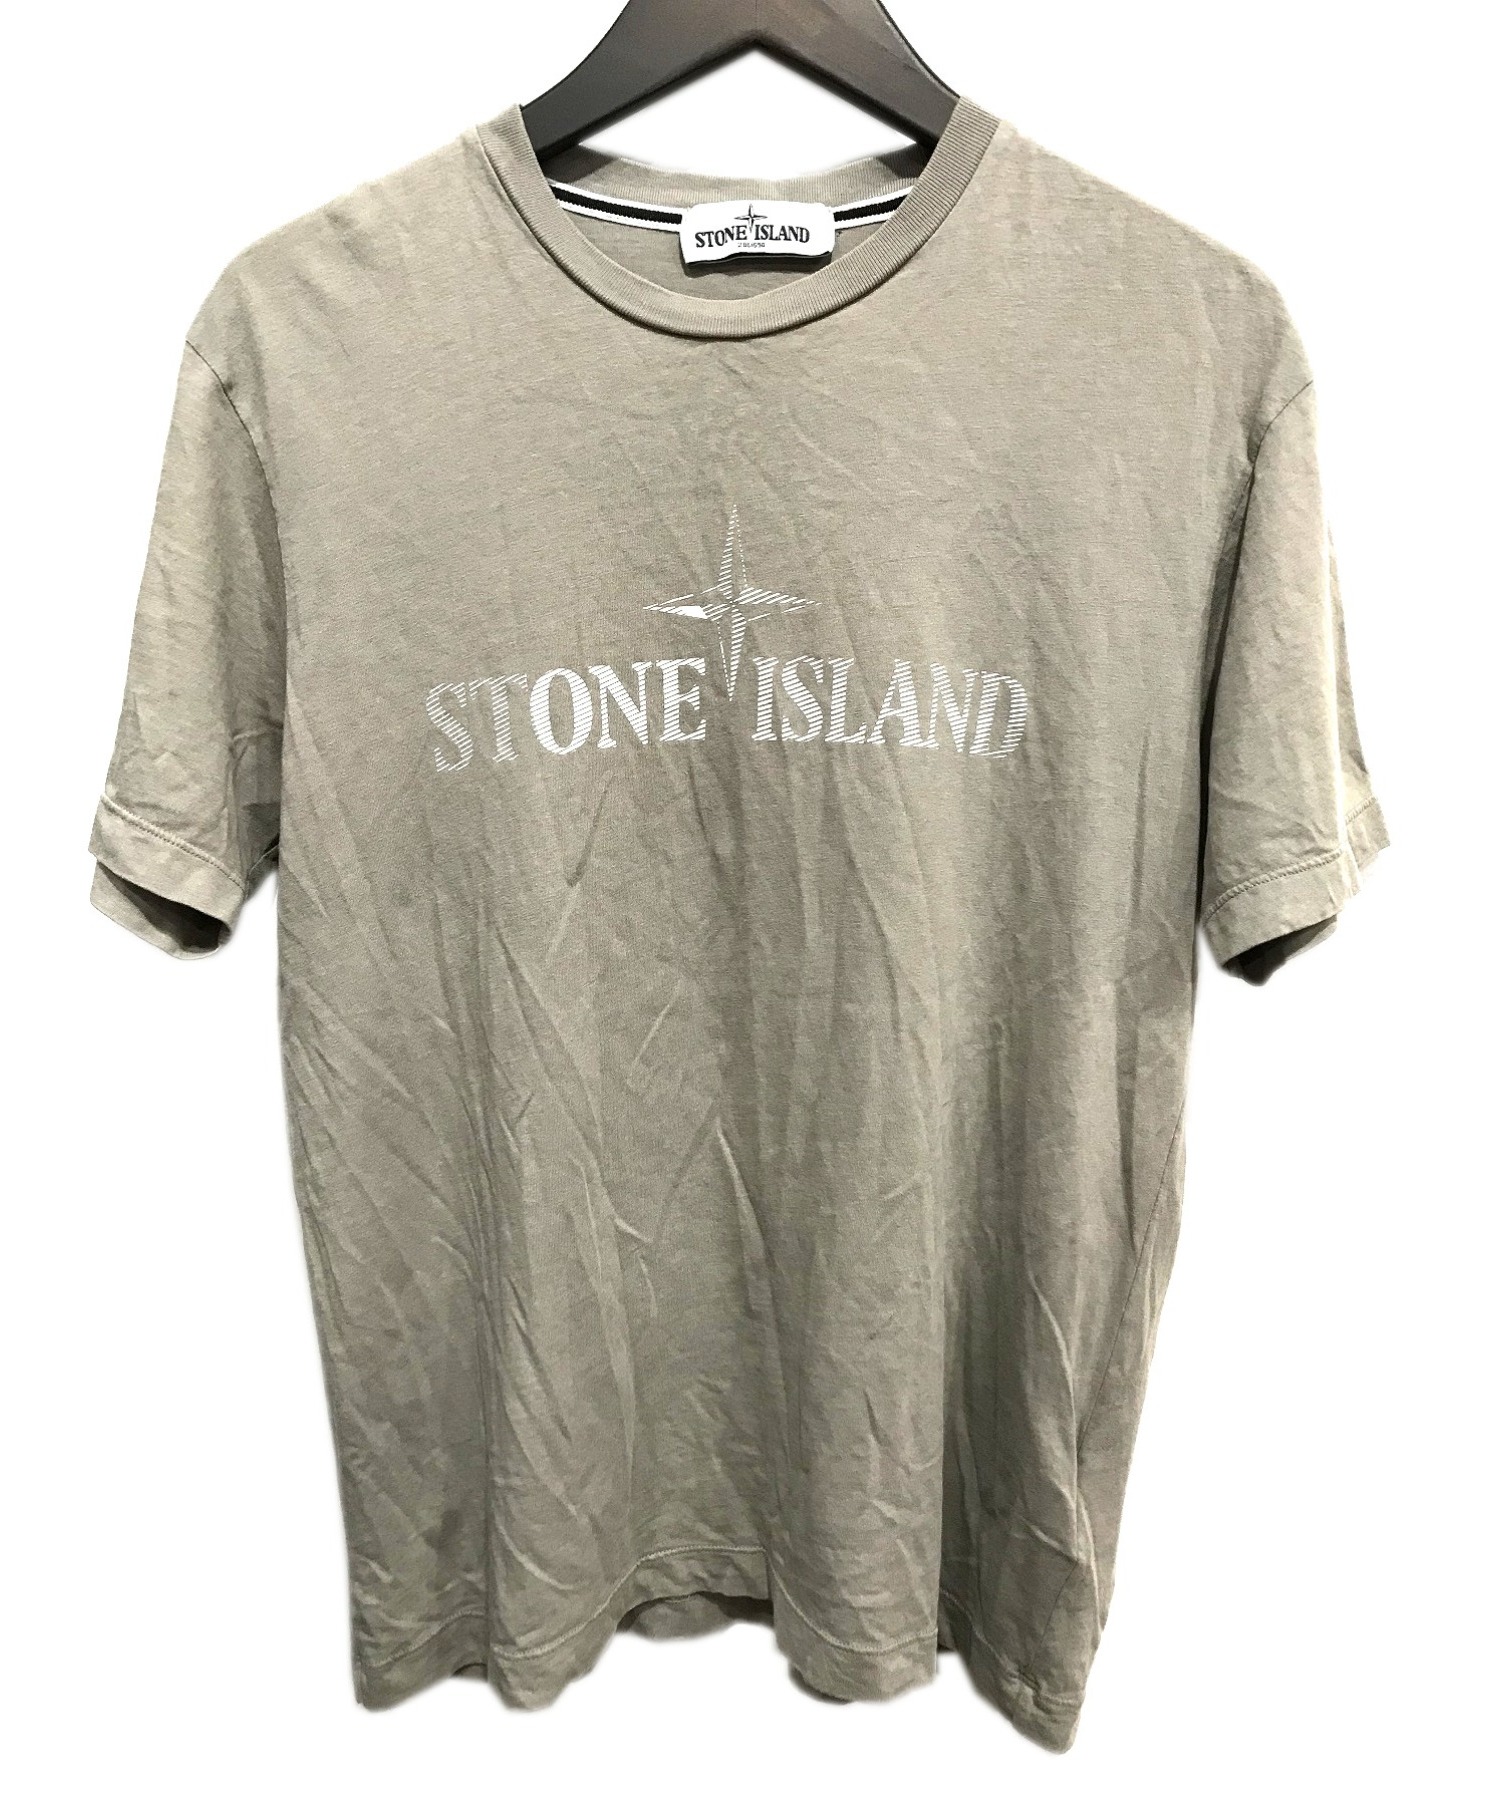 STONE ISLAND (ストーンアイランド) ロゴTシャツ ベージュ サイズ:M